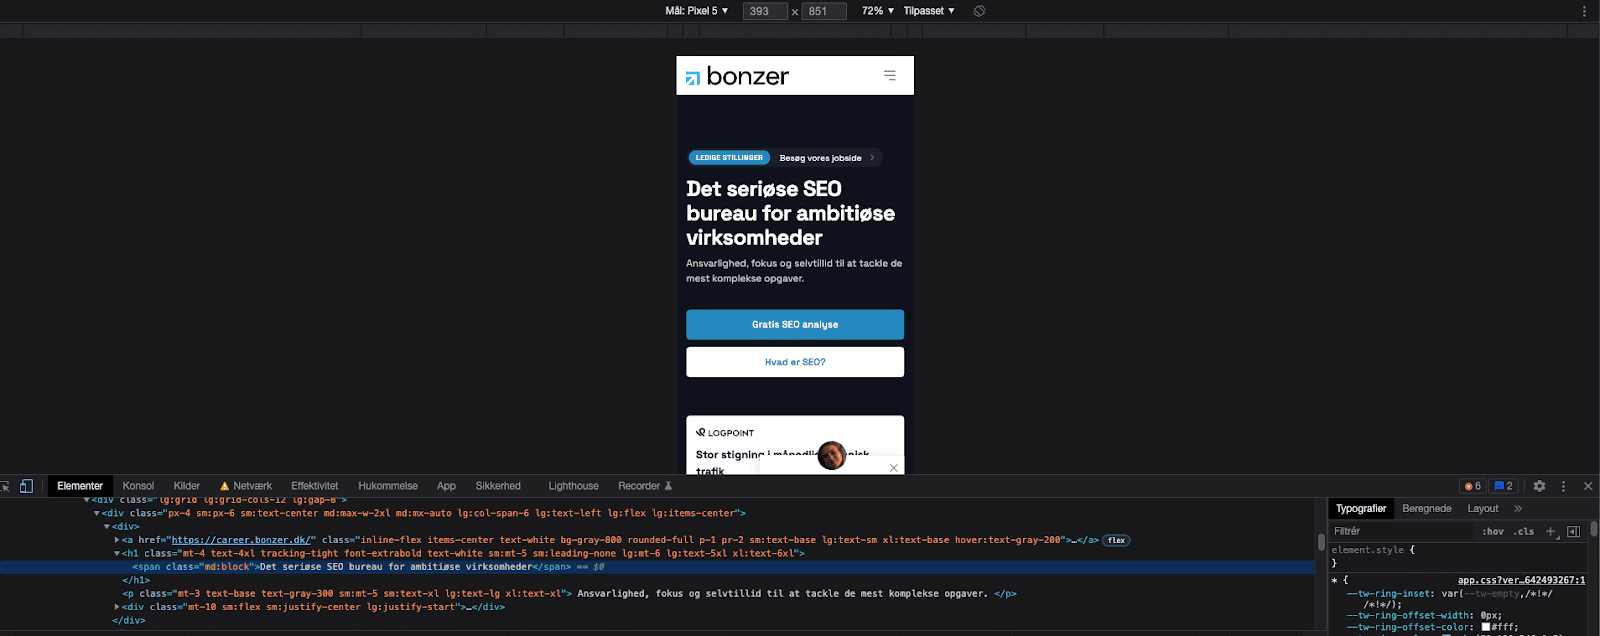 En liten bild på Bonzers hemsida och under finns kodning